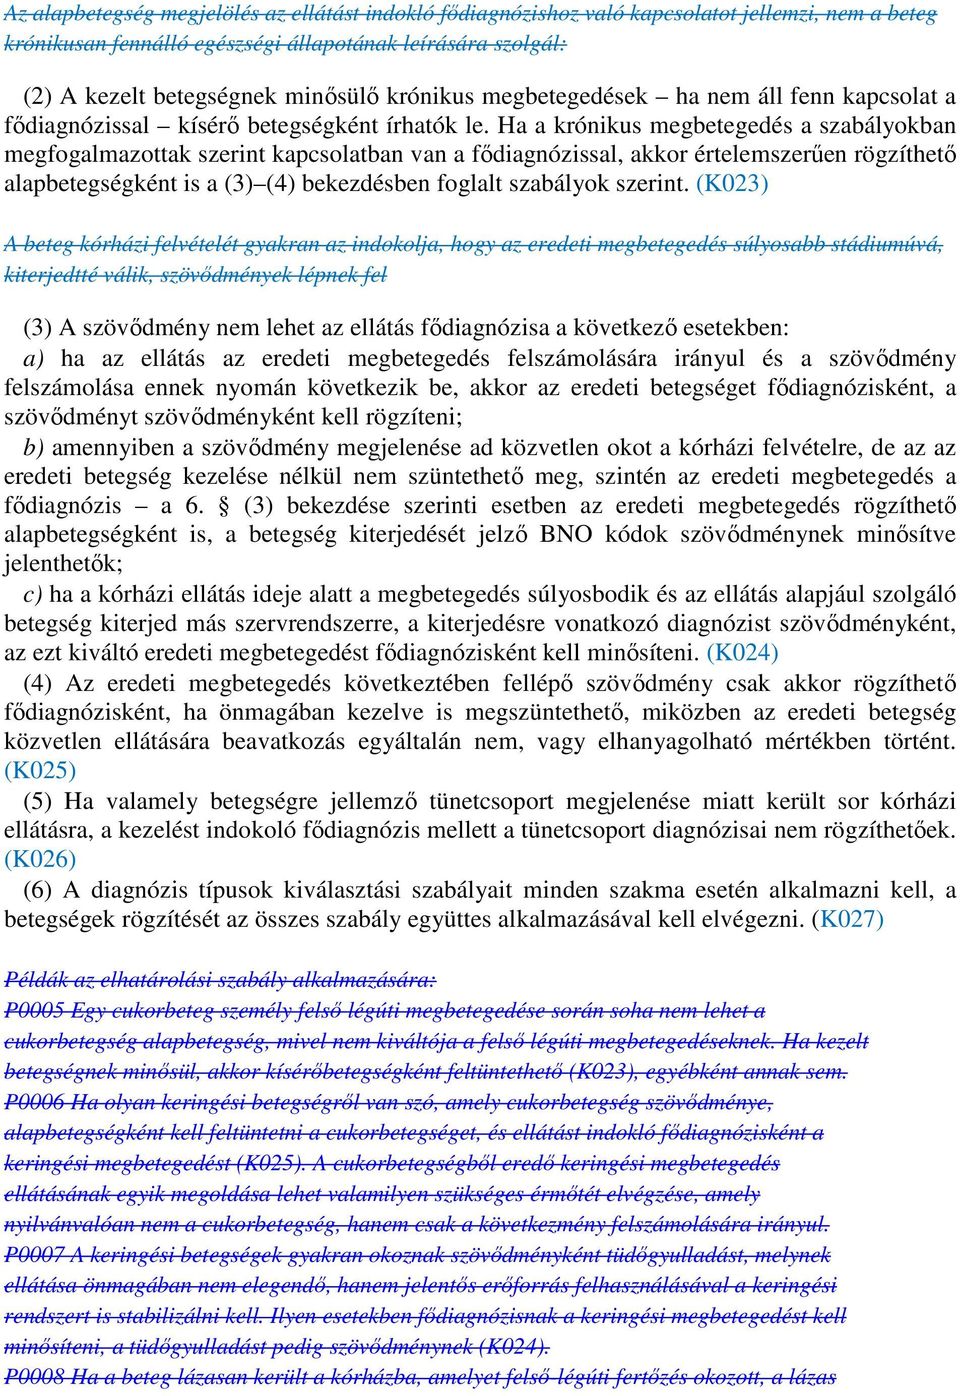 Ha a krónikus megbetegedés a szabályokban megfogalmazottak szerint kapcsolatban van a fıdiagnózissal, akkor értelemszerően rögzíthetı alapbetegségként is a (3) (4) bekezdésben foglalt szabályok